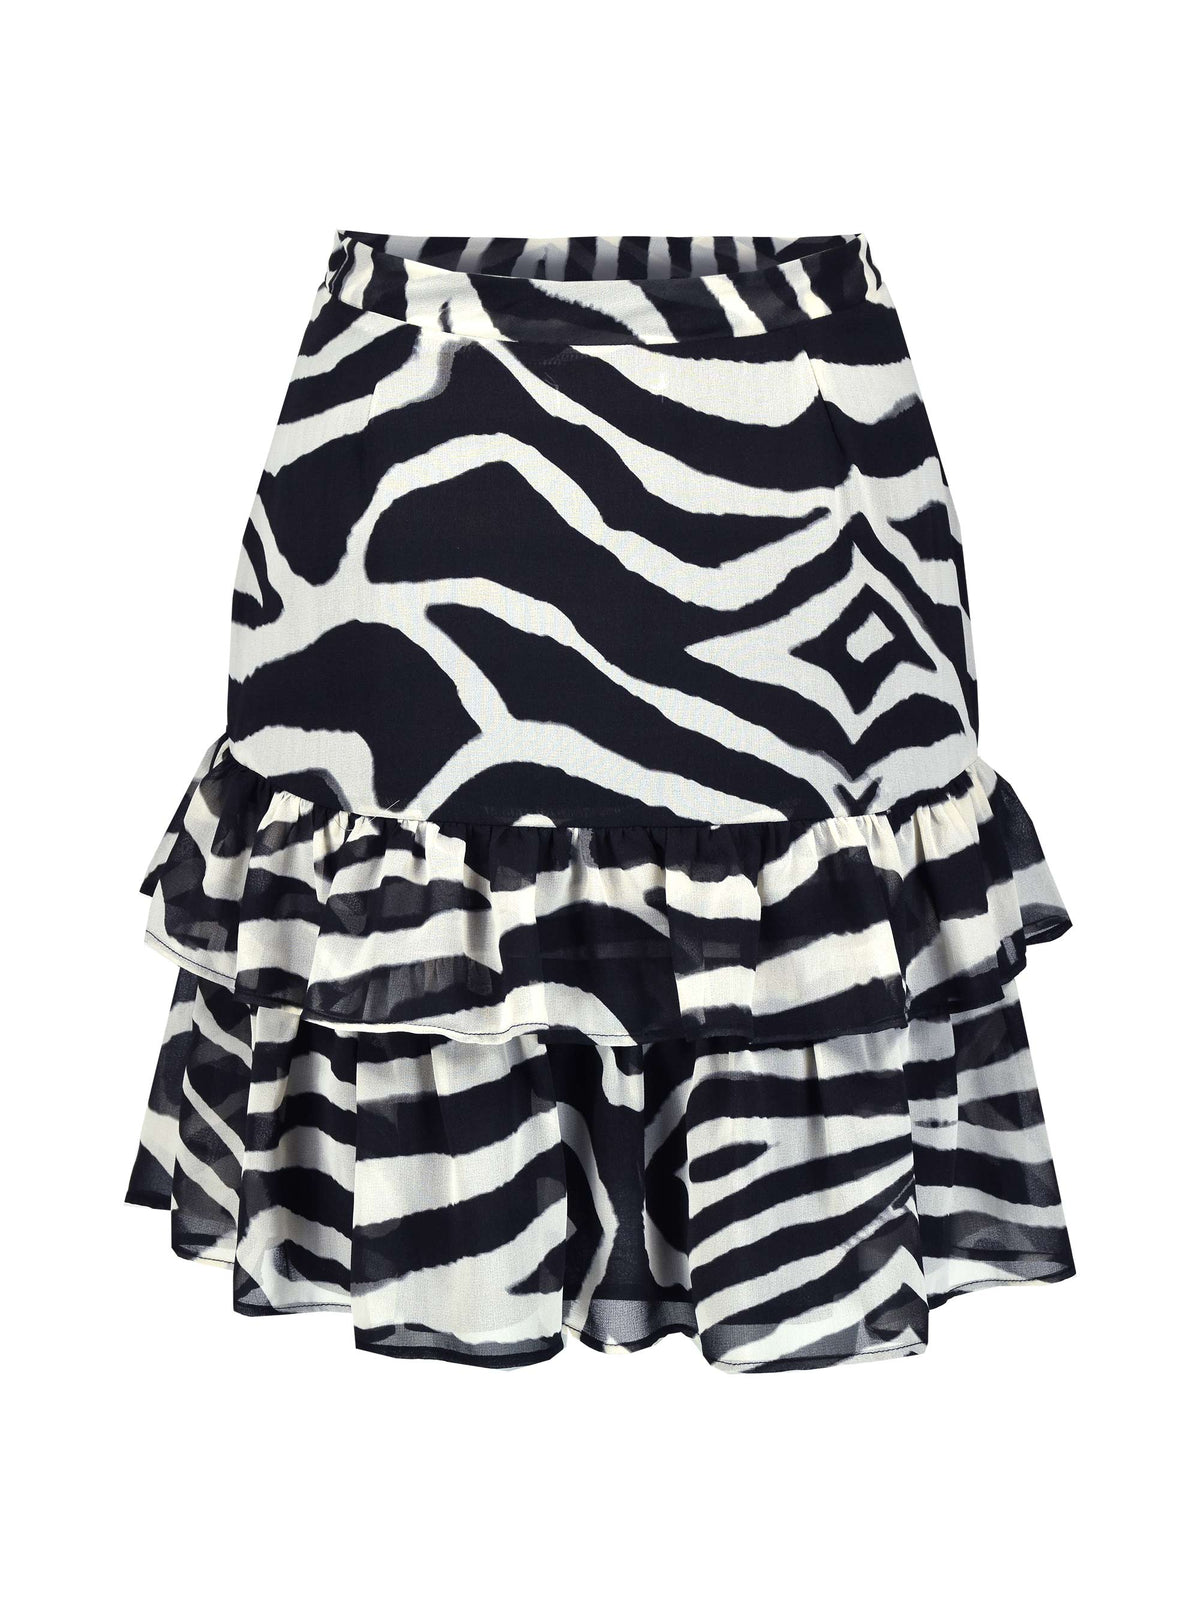 Zebra Short Ruffle Skirt